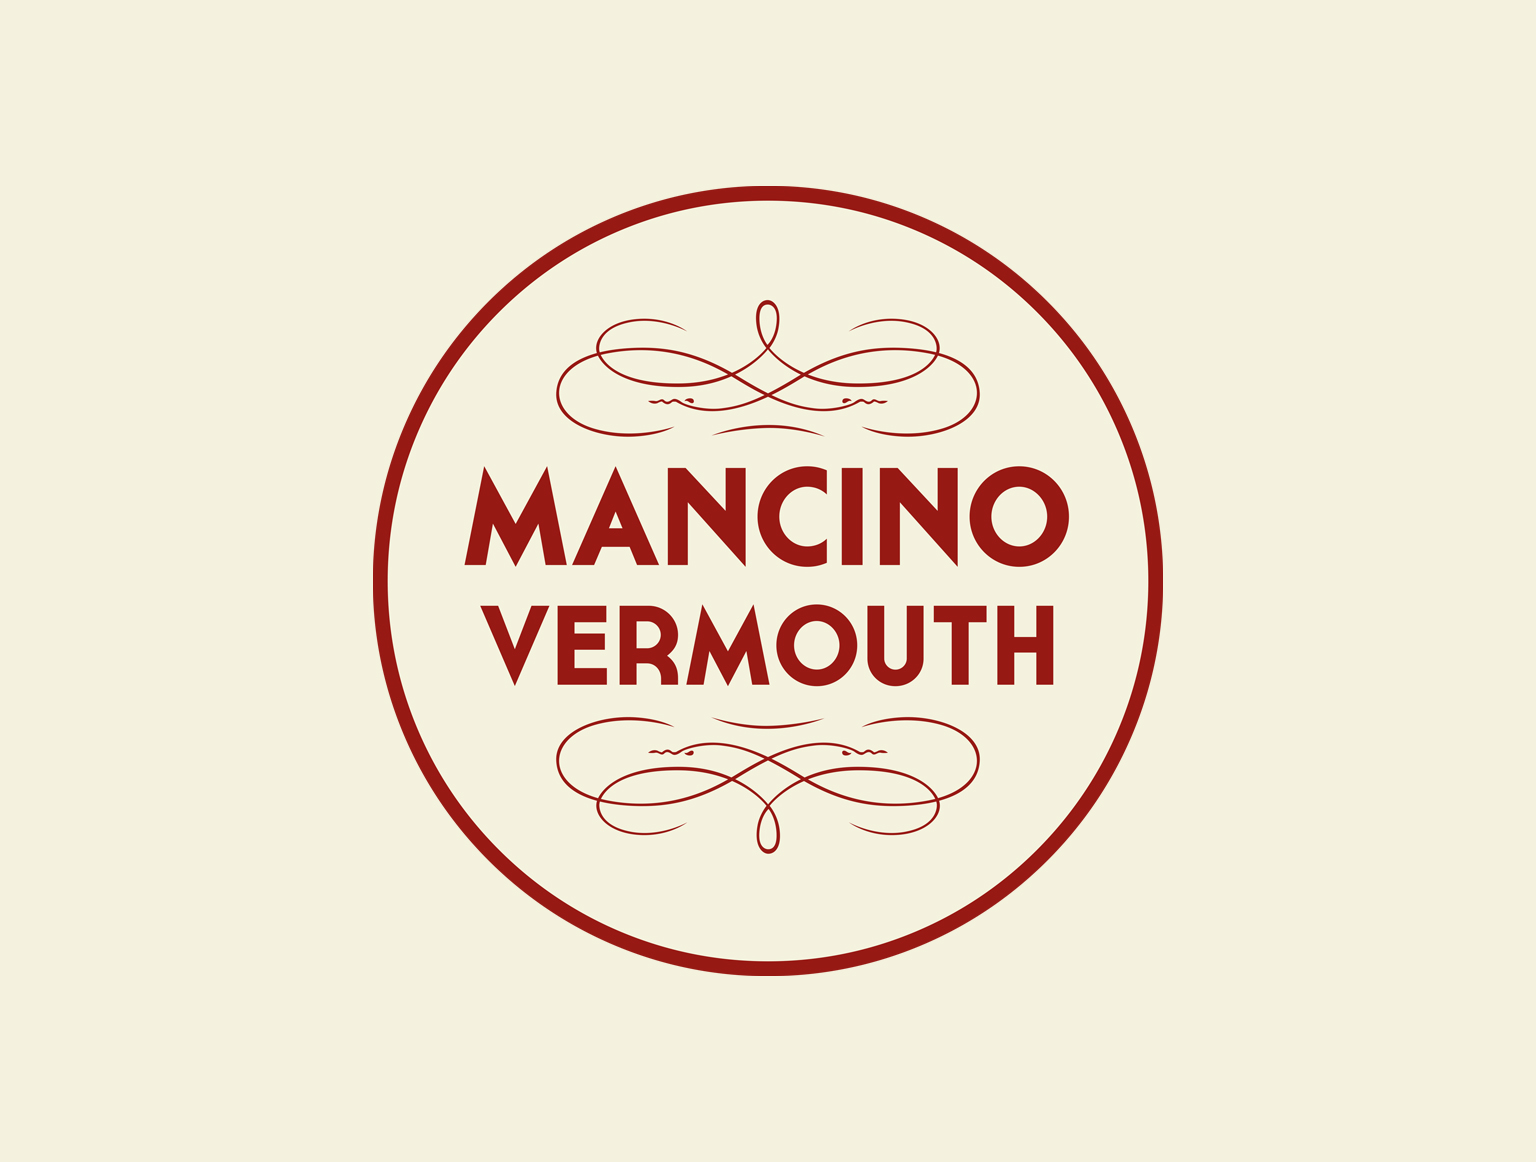 Mancino Vermouth va online con il nuovo sito firmato Tunnel Studios.